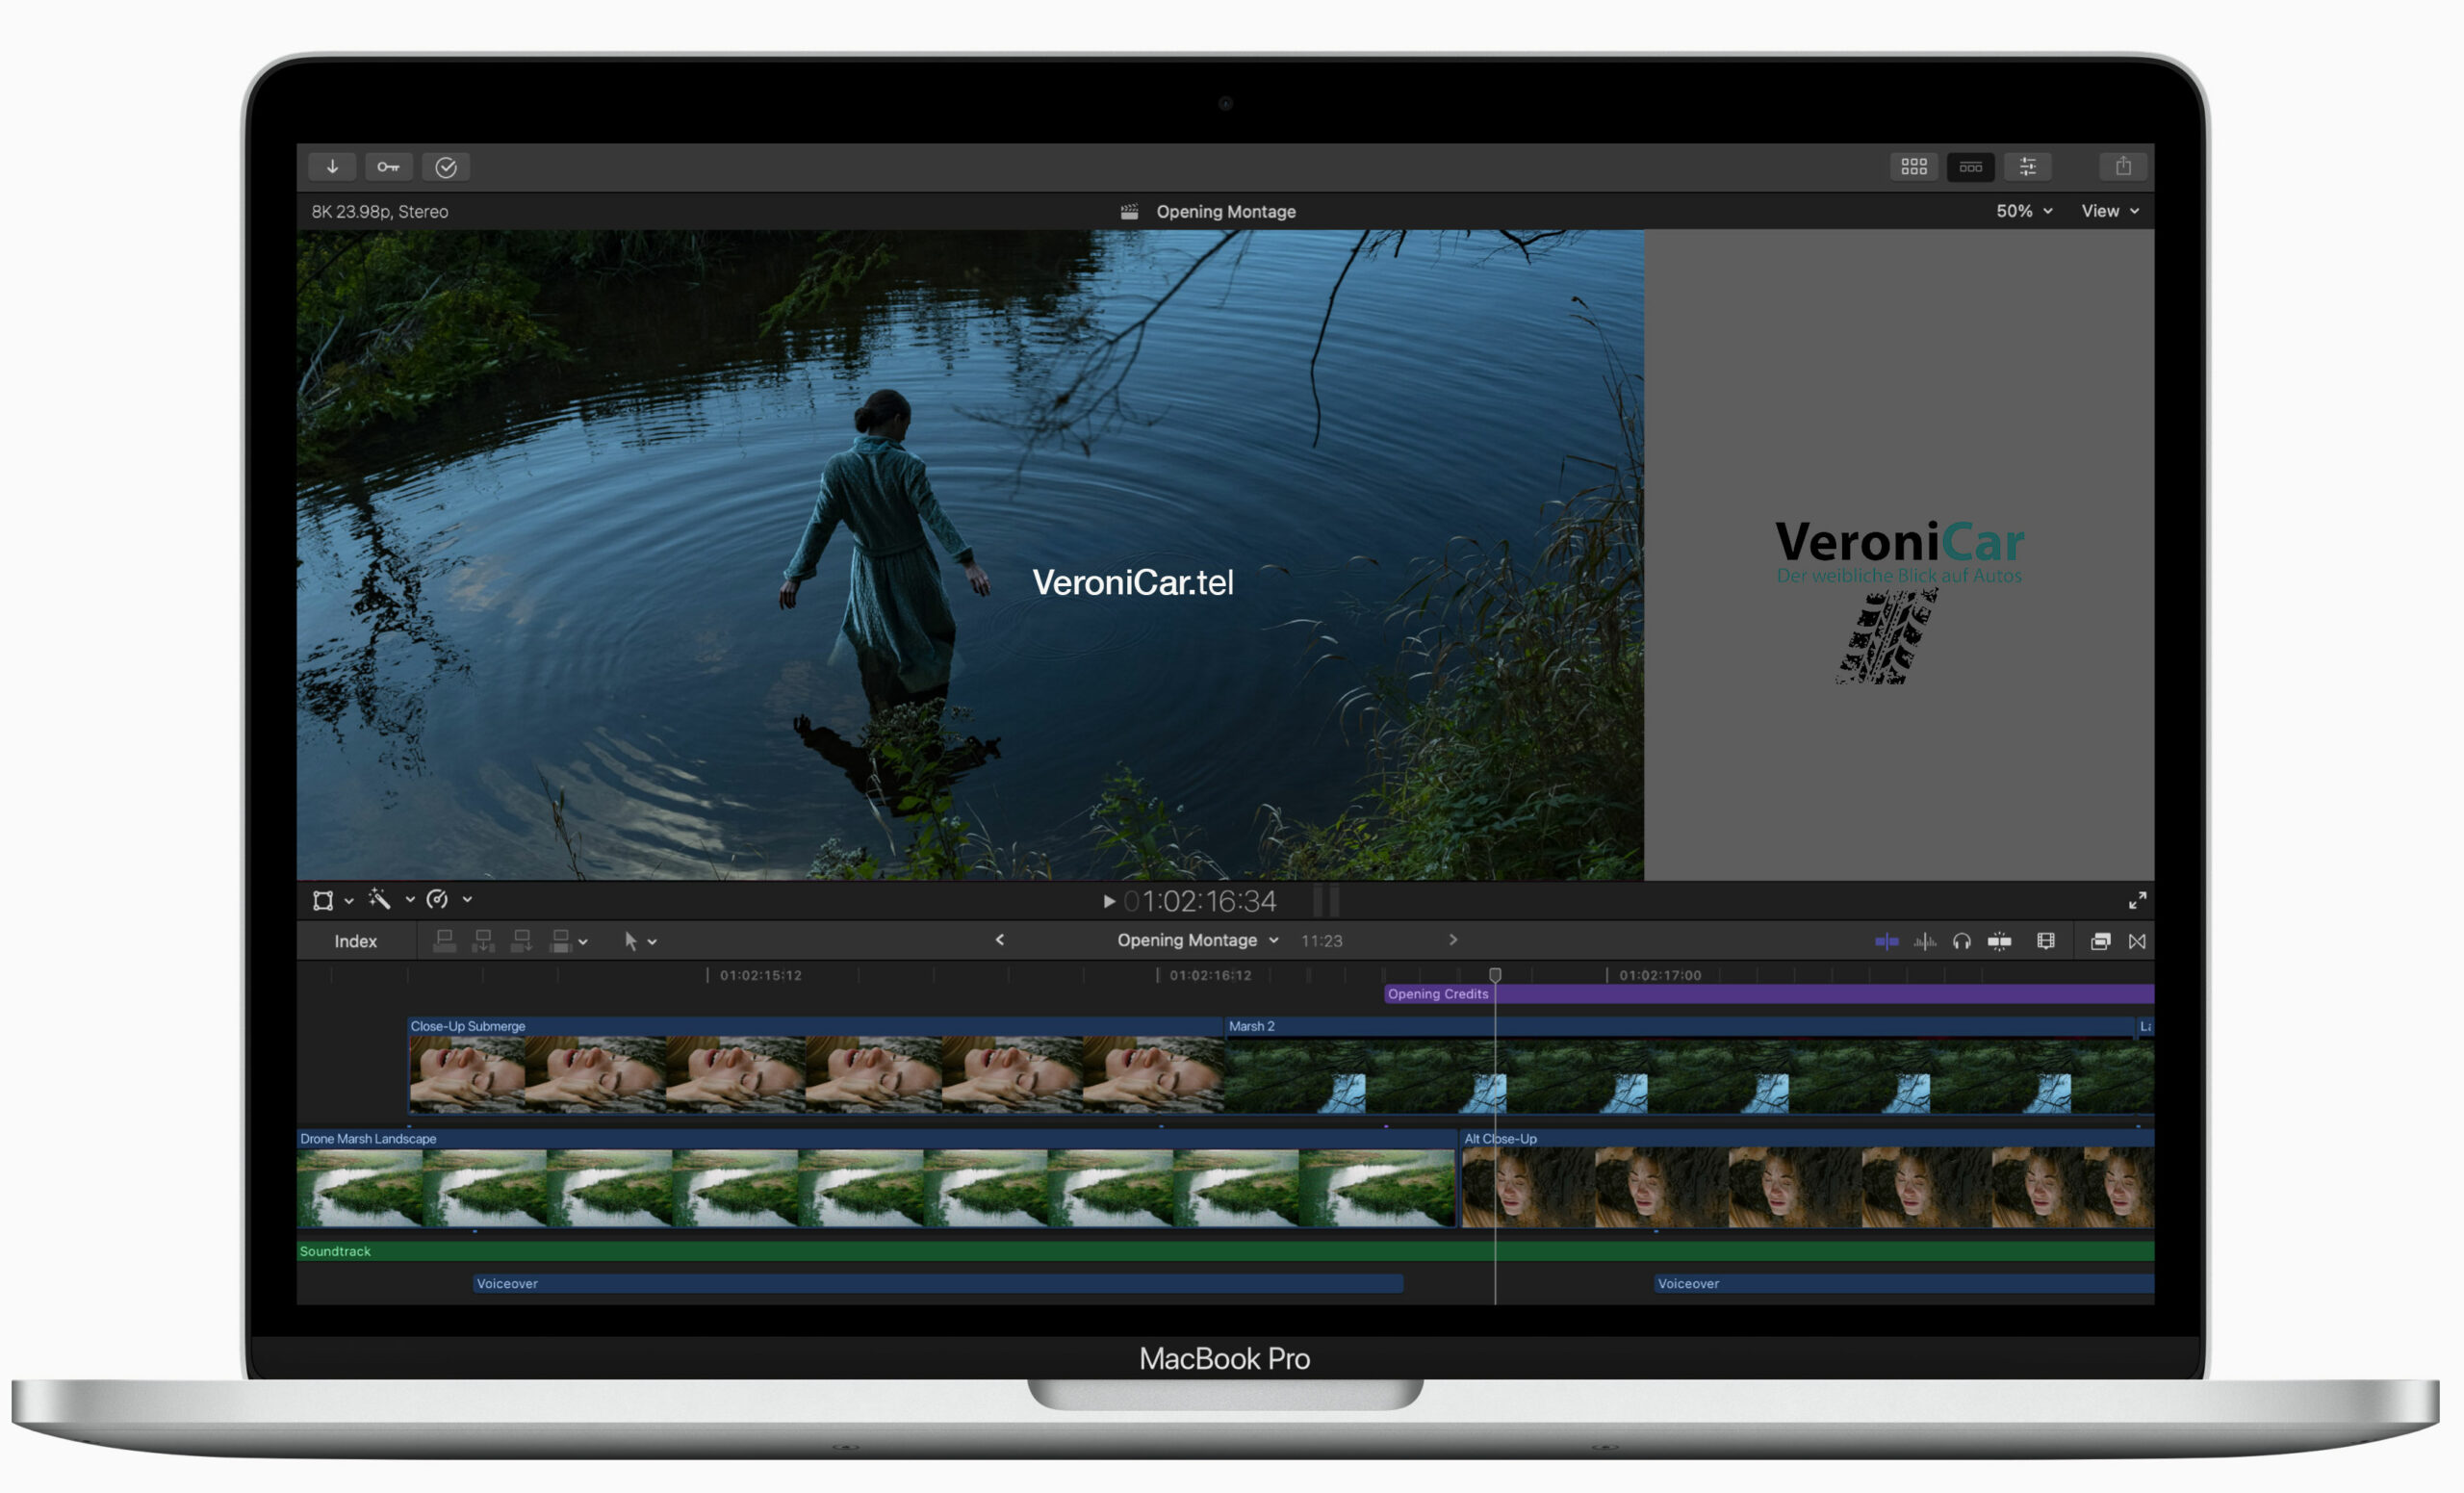 Mit dem neuen M2 Chip bietet das 13" MacBook Pro noch mehr Leistung und Funktionen als bisher für schnellere Video- und Fotobearbeitung und flüssigeres Gameplay